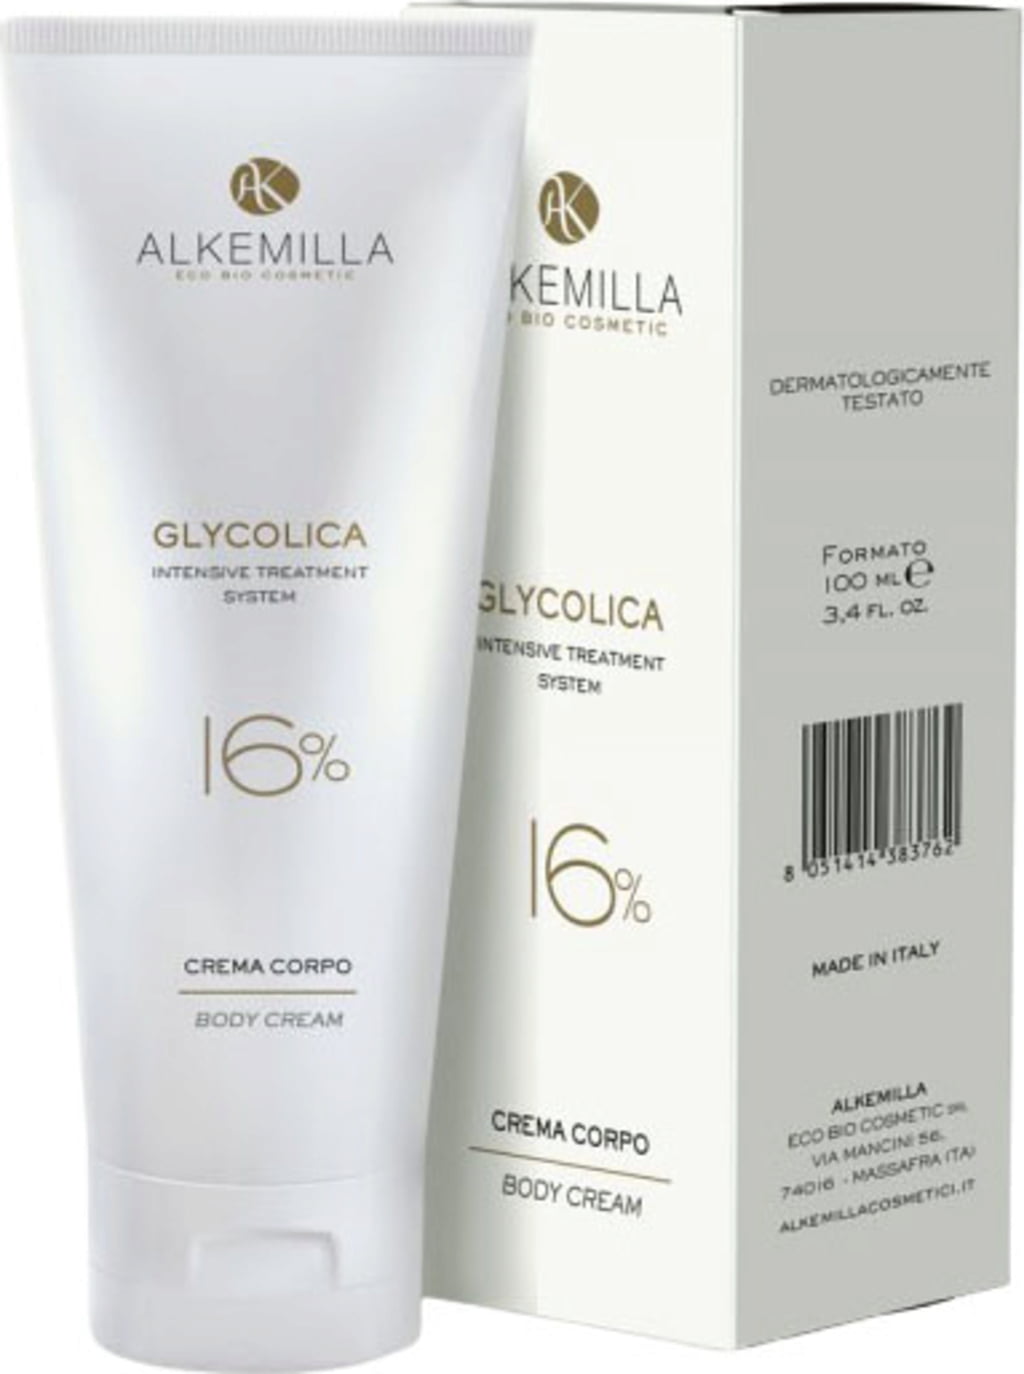 Alkemilla Eco Bio Cosmetic Glycolica Crema Corpo 16% - 100 ml